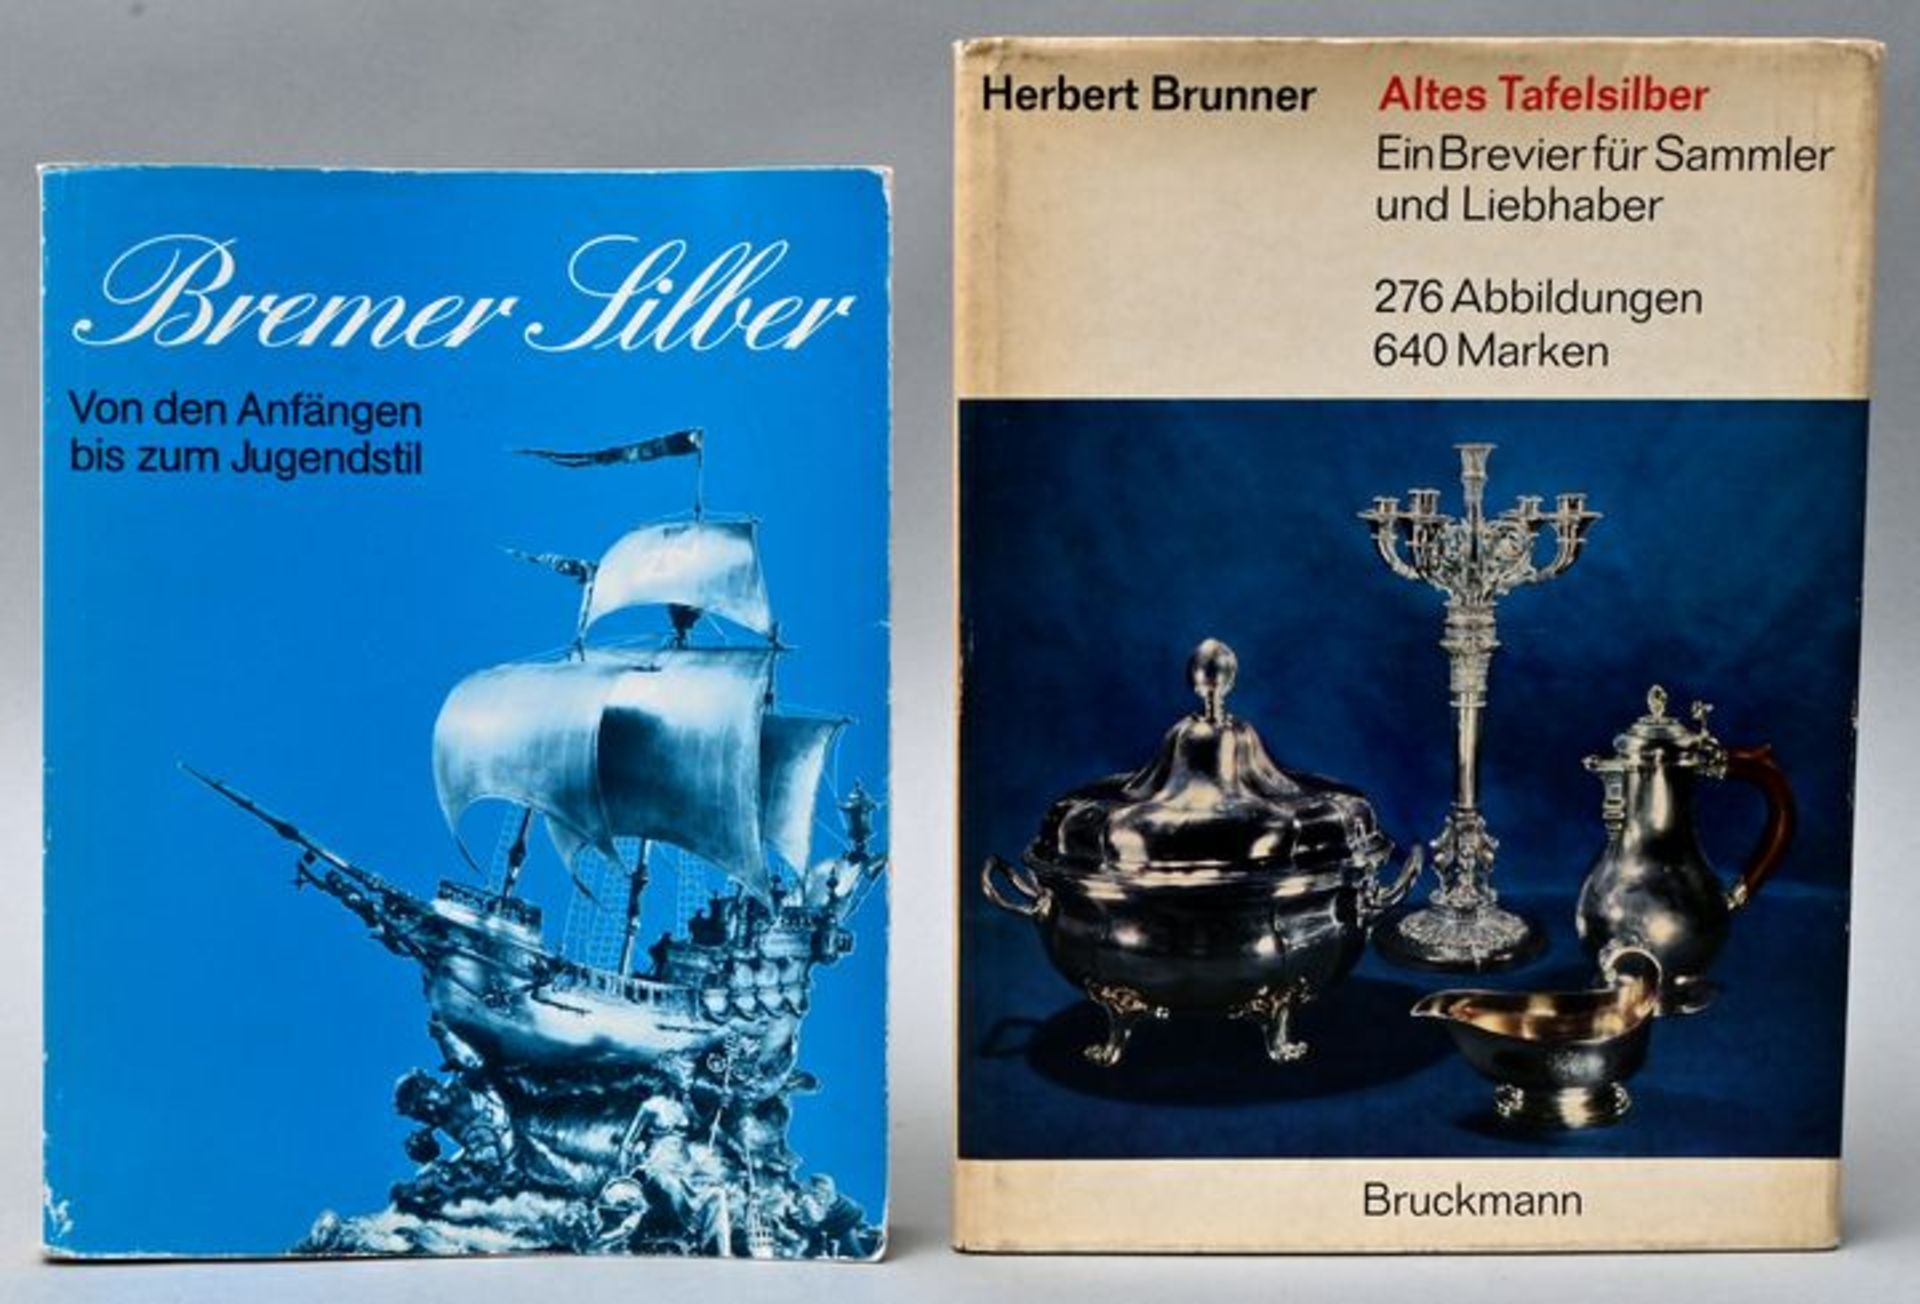 Zwei Bücher Silber / Two books on silverware